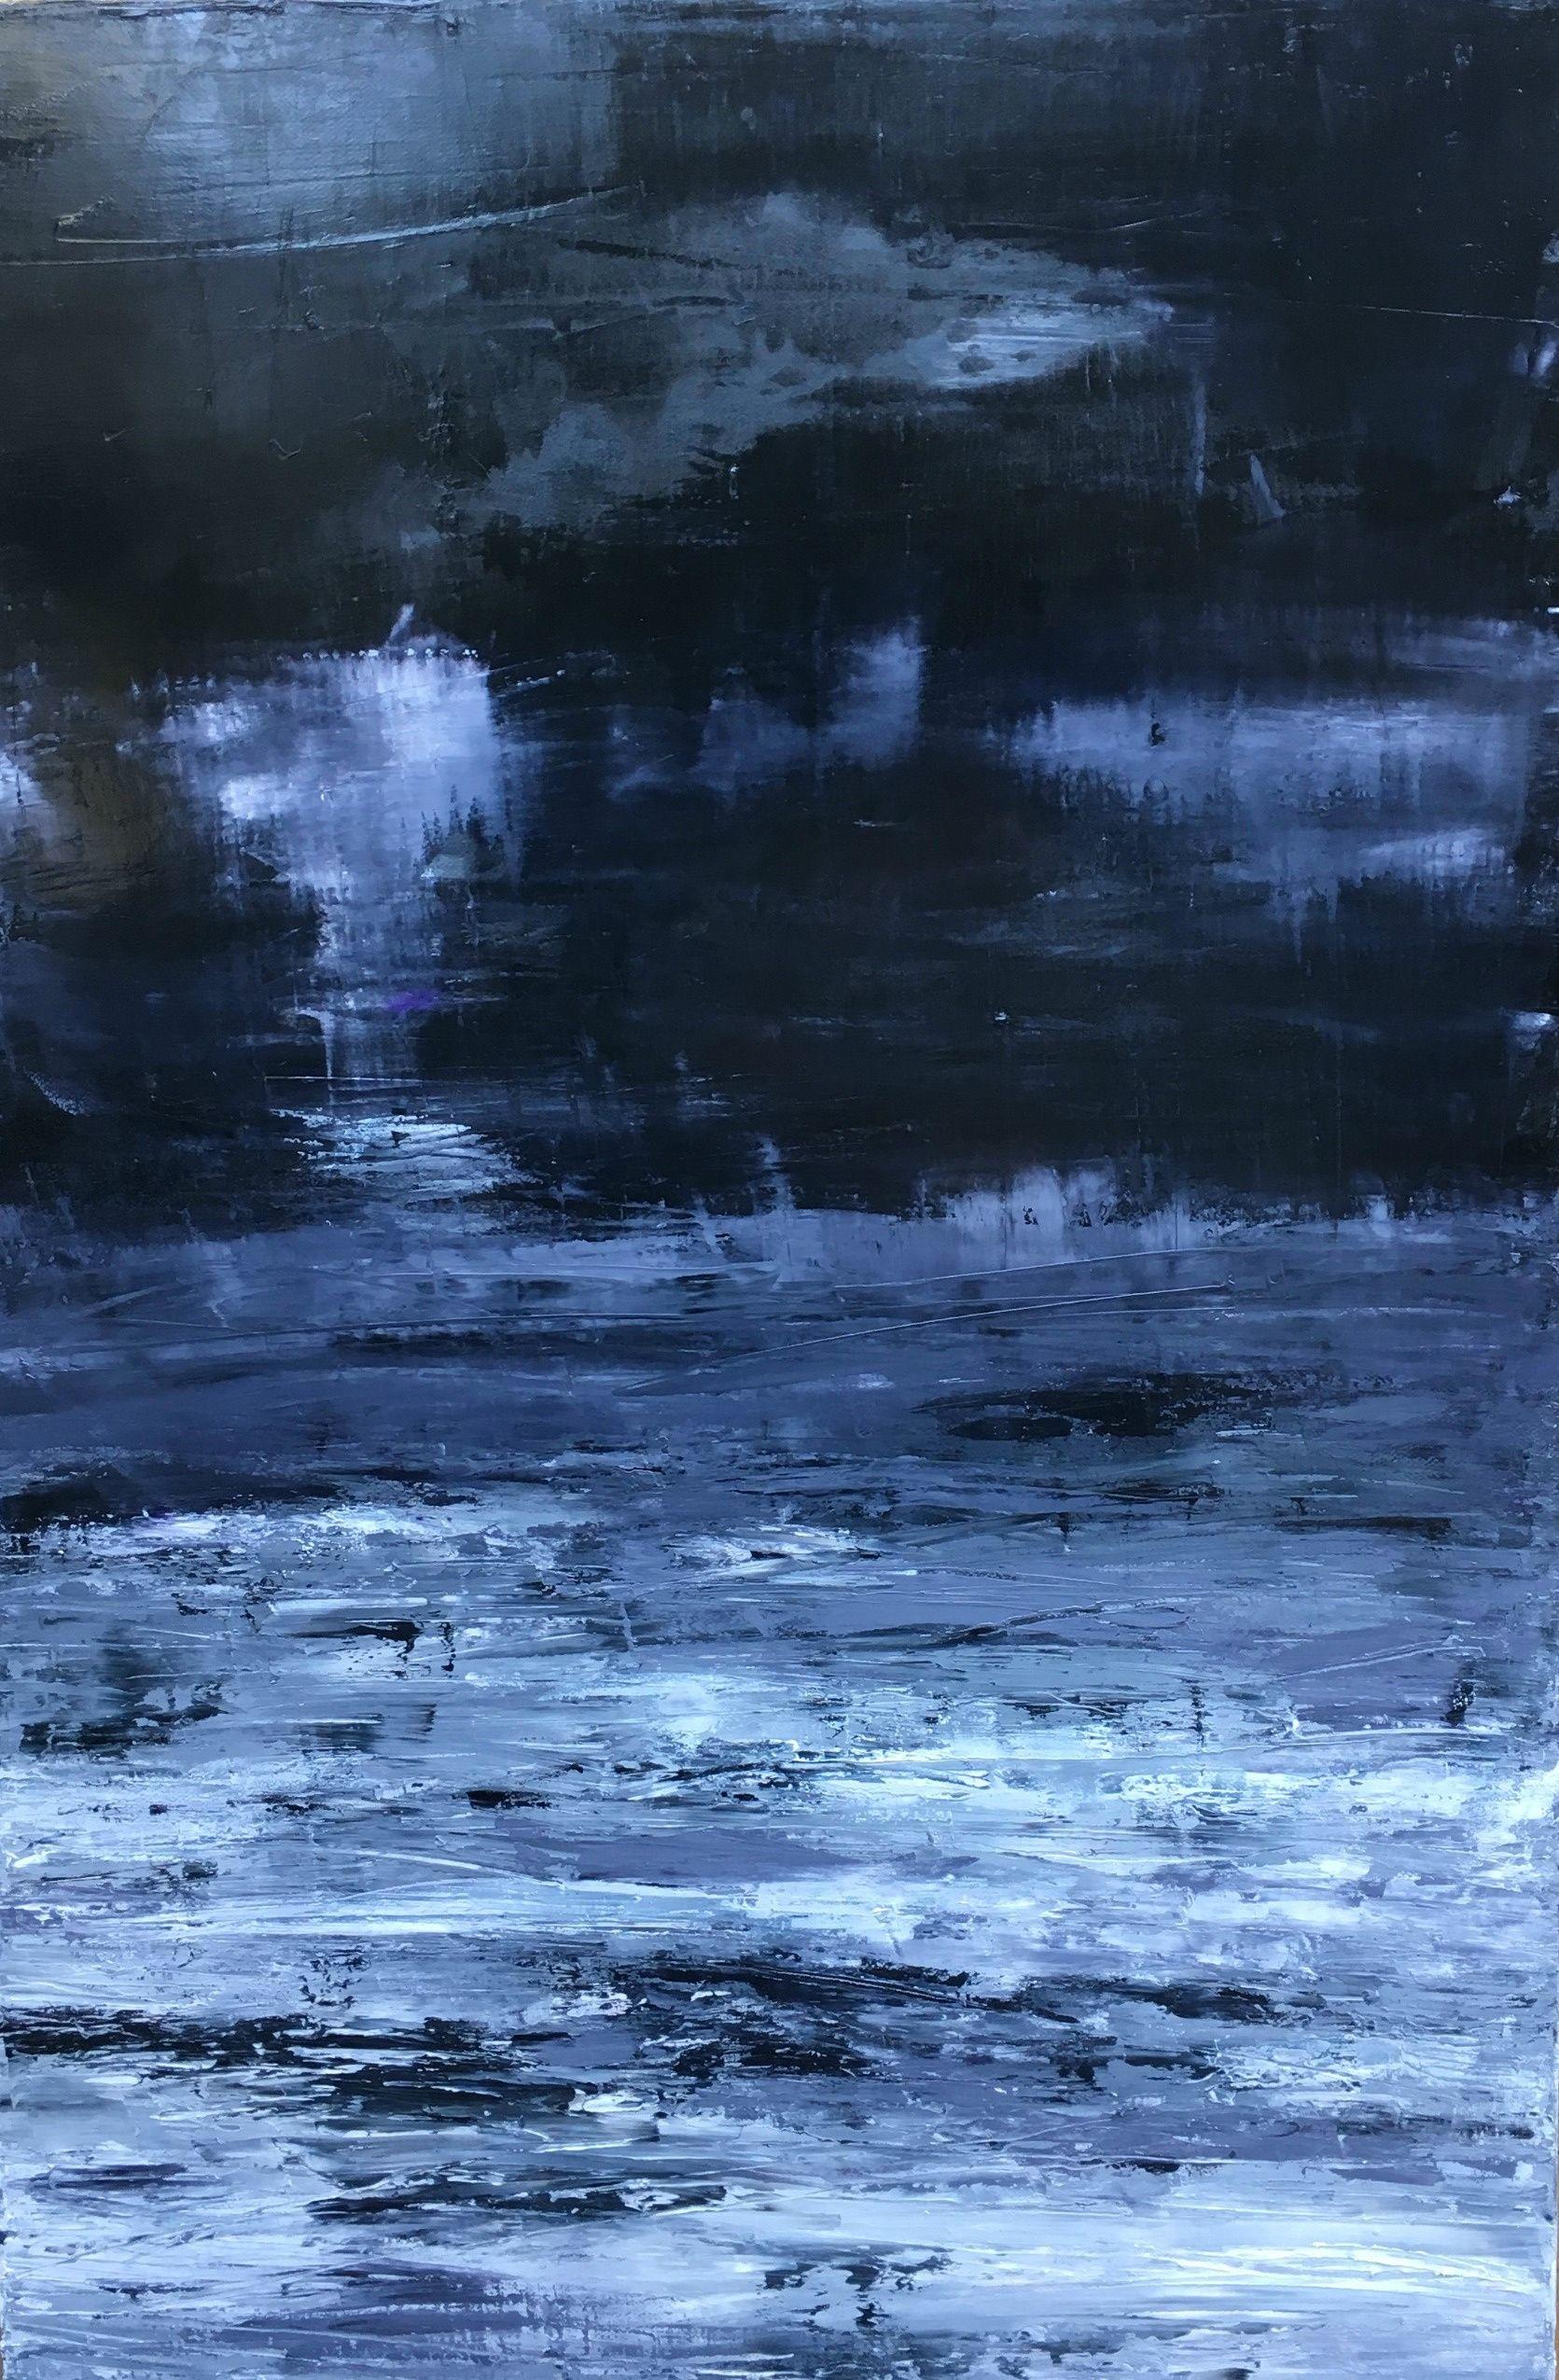 Abstract Painting Angela Dierks - Étude de paysage en noir et blanc II, peinture, huile sur toile